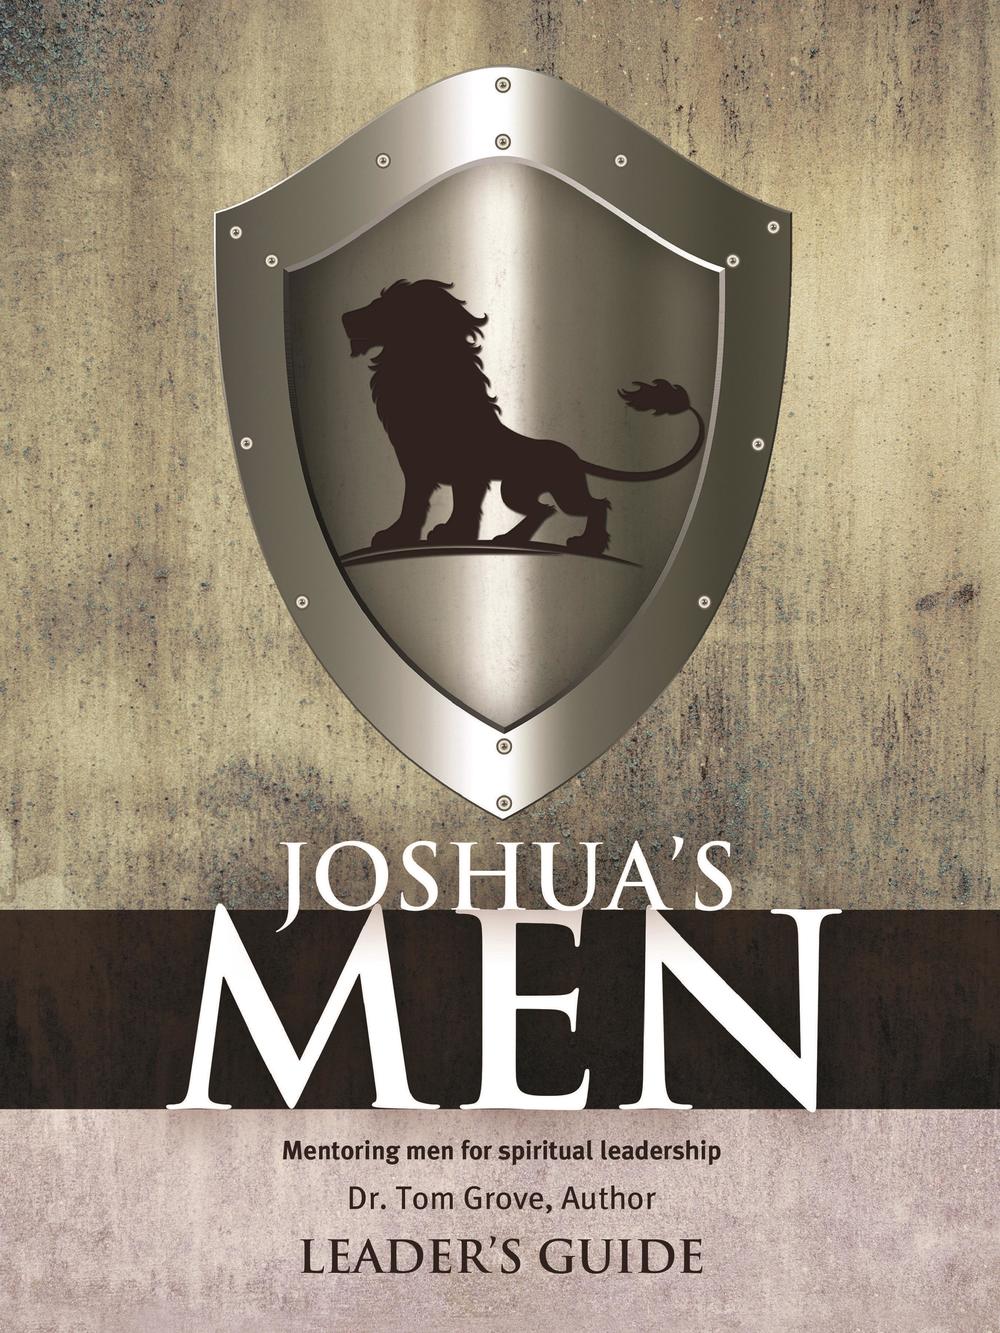  Joshua’s Men 